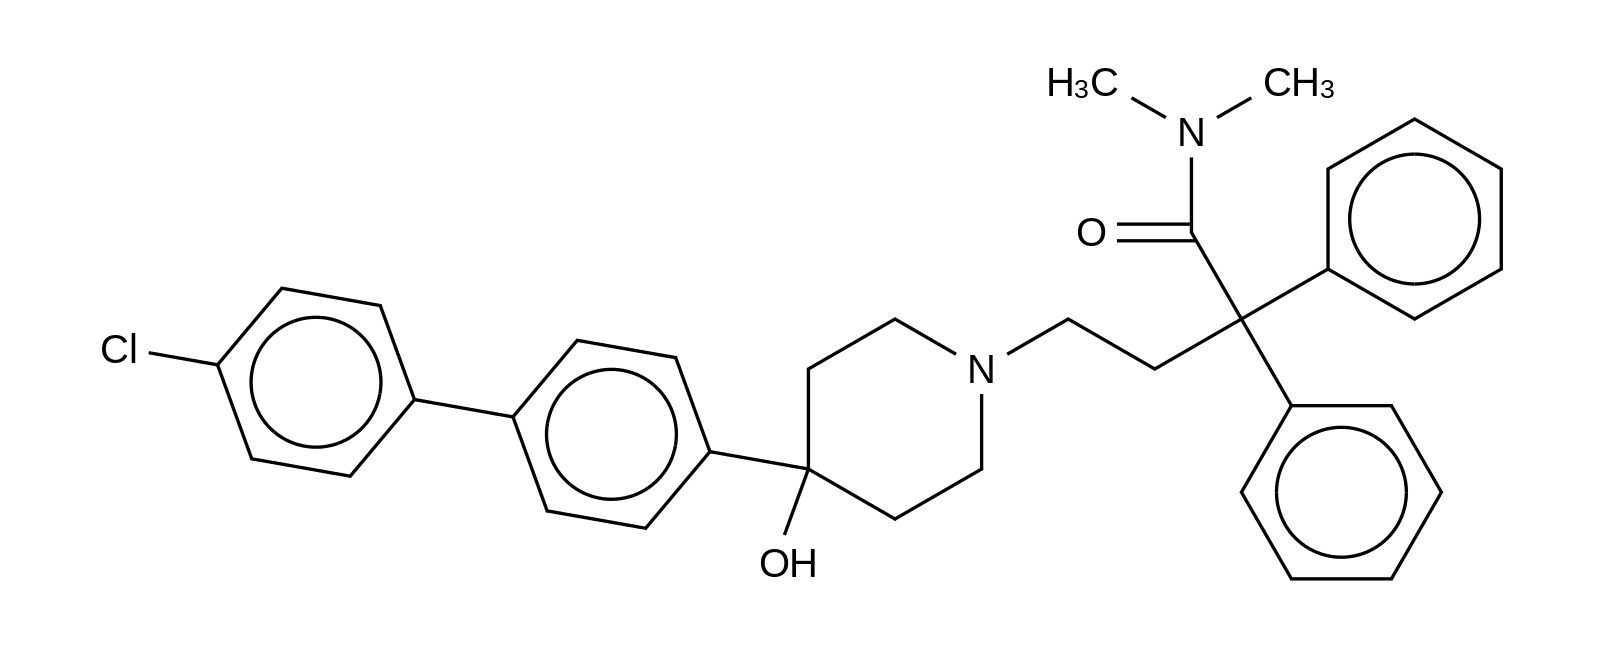 4-Dechloro-4-(4-chlorophenyl) Loperamide